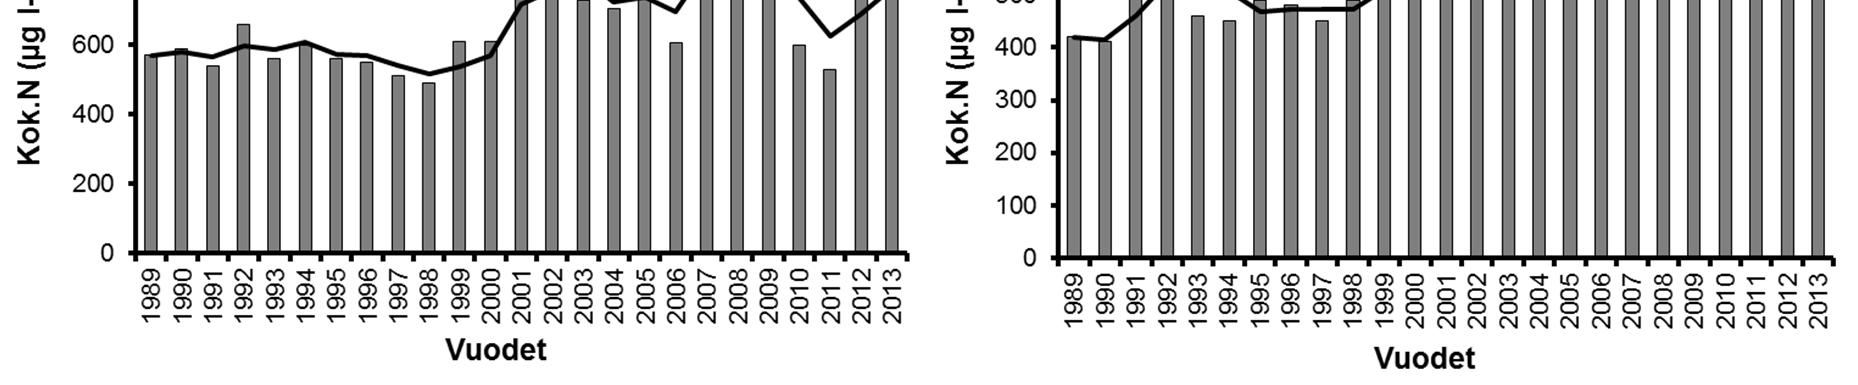 20 3.2. Hauhonselän tilan kehitys vedenlaadun ja kasviplanktonin perusteella Hauhonselän vedenlaatuaineistosta oli havaittavissa selvä ja äkillinen muutos eri muuttujien arvoissa 1990-luvun lopulla.